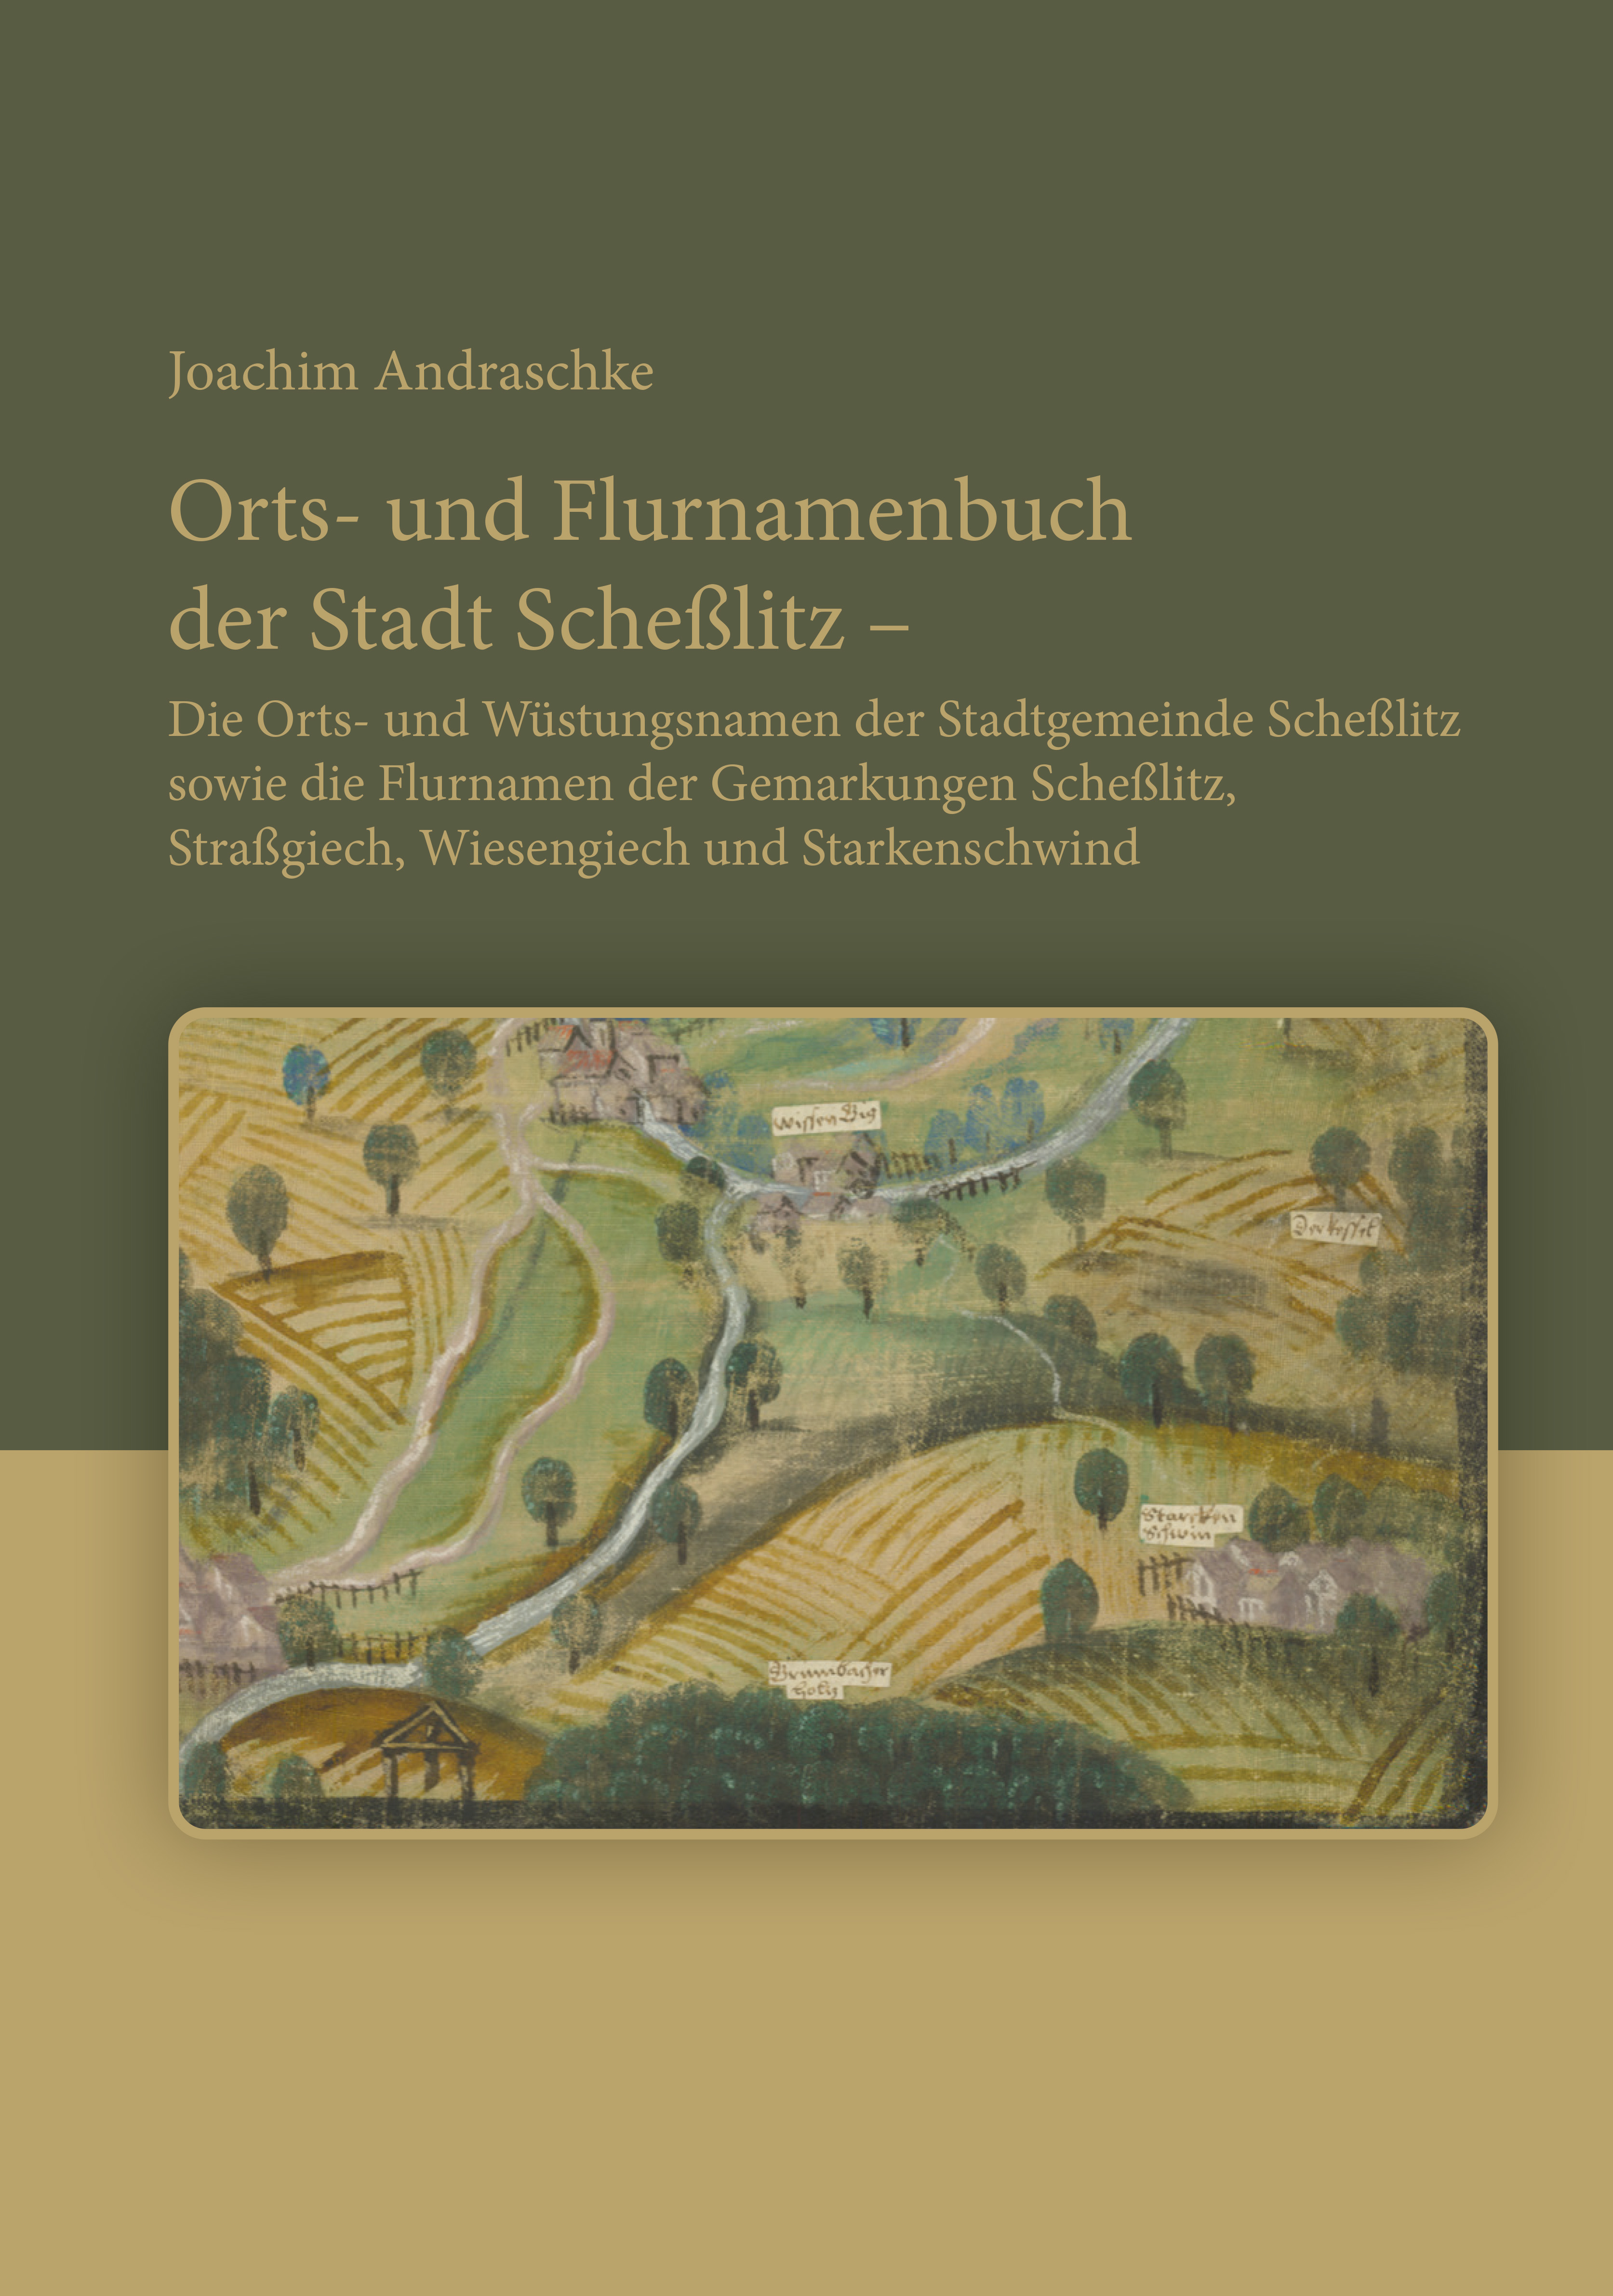 Andraschke Joachim - Orts- und Flurnamenbuch der Stadt Scheßlitz